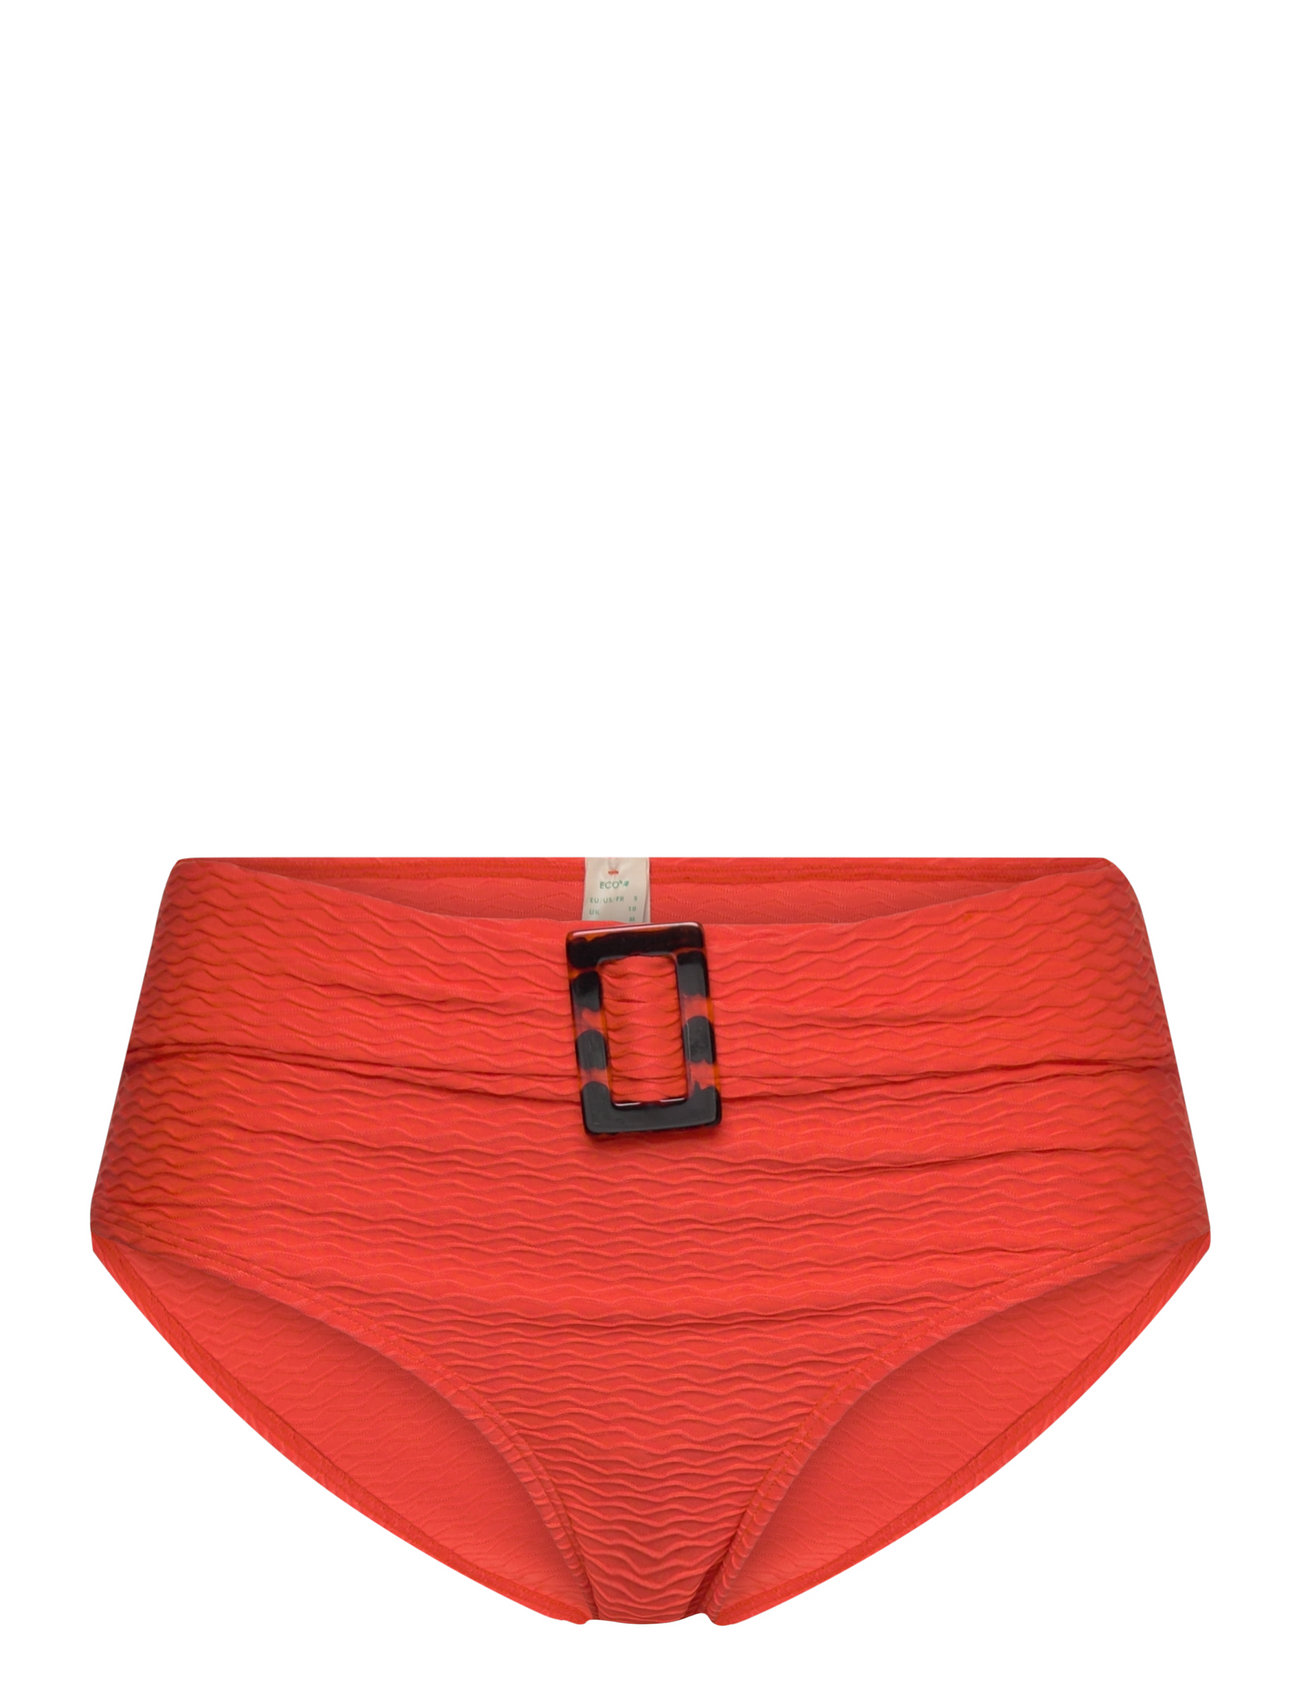 Sarawak Brief Swimwear Bikinis Bikini Bottoms High Waist Bikinis Orange Dorina